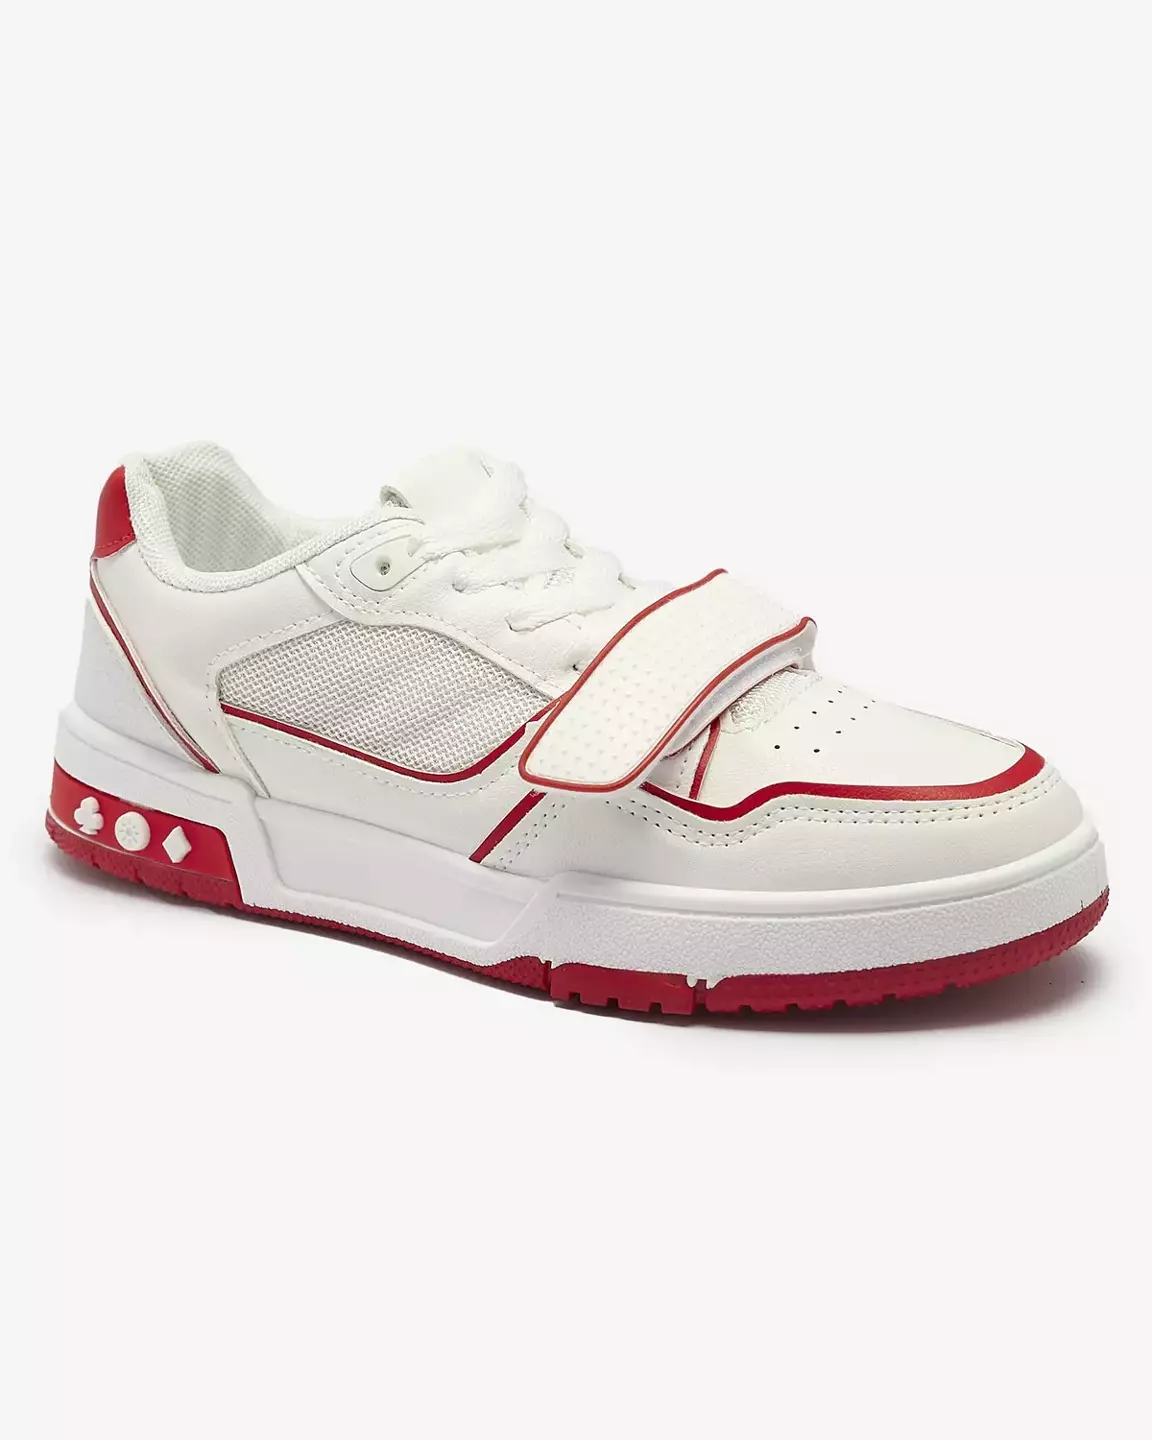 Sieviešu sporta kedas baltā un sarkanā krāsā Xirrat- Footwear